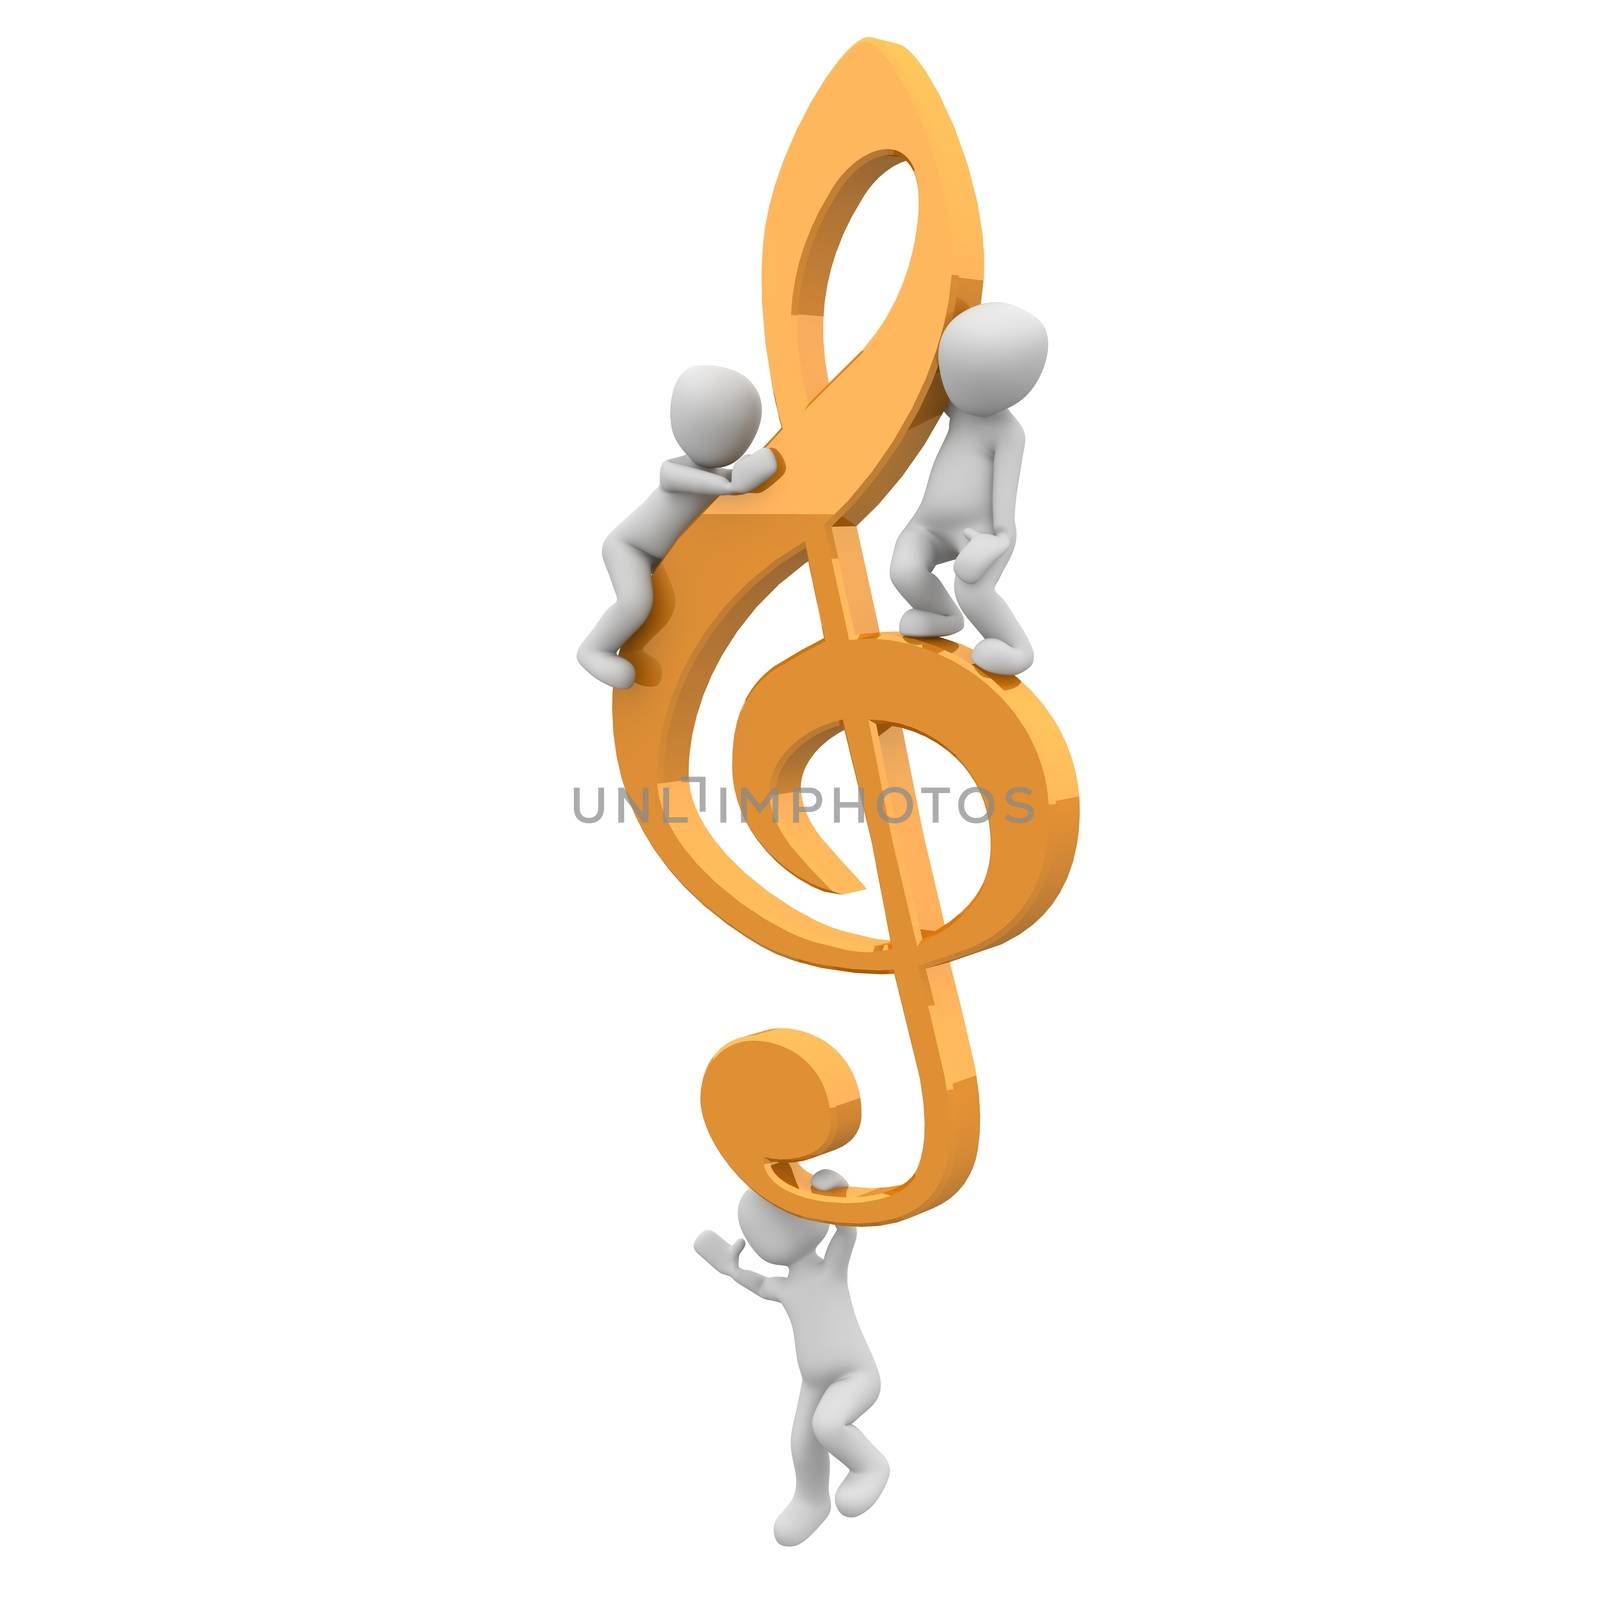 clef by 3DAgentur